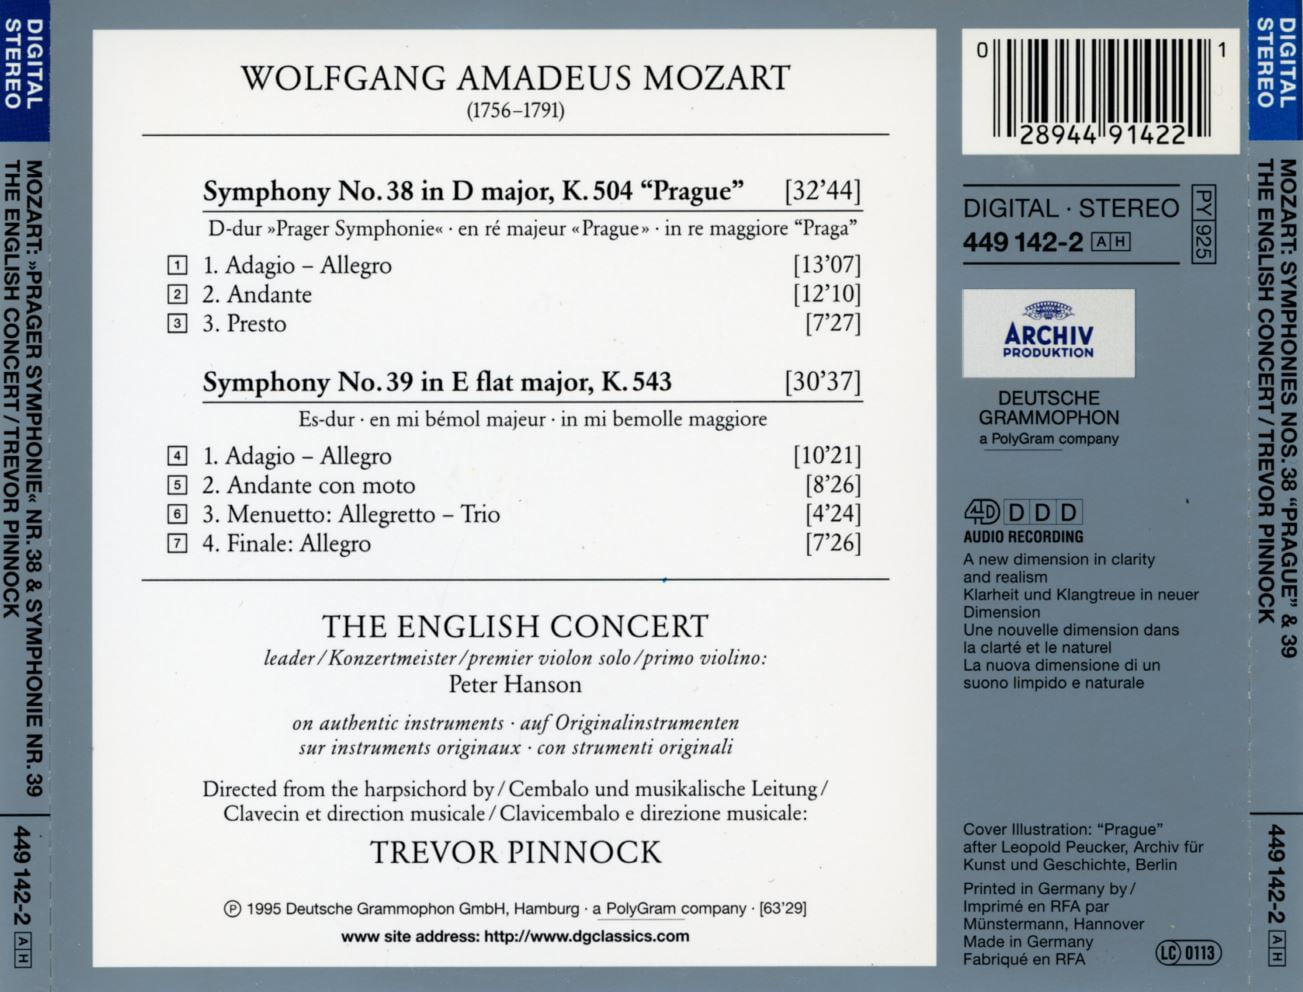 트레버 피녹 - Trevor Pinnock - Mozart Symphonies Nos. 38 "Prague" & 39 [독일발매]